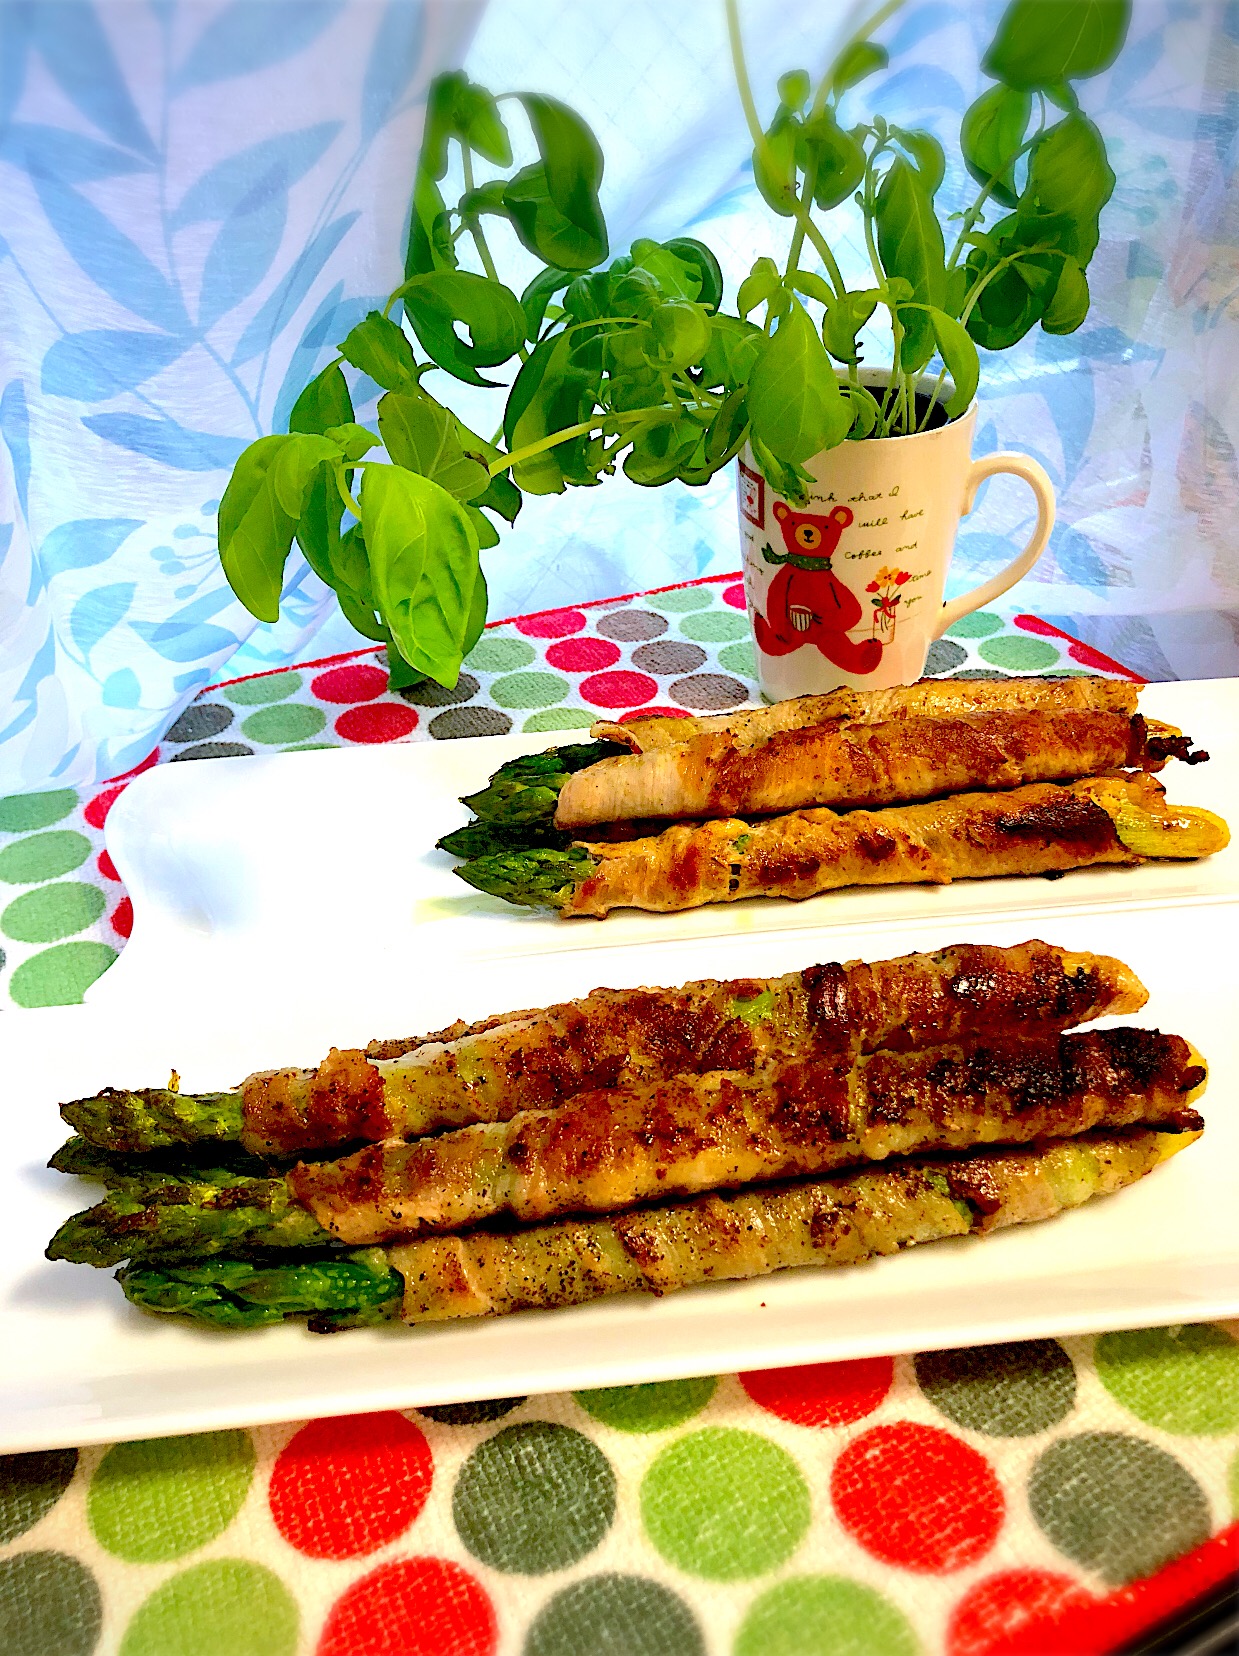 ?新鮮アスパラガスの肉巻き ?
✌?塩胡椒とカレー味の2種類✌? 
?Fresh Asparagus Wrap?
I made fresh asparagus wrapped with meat.